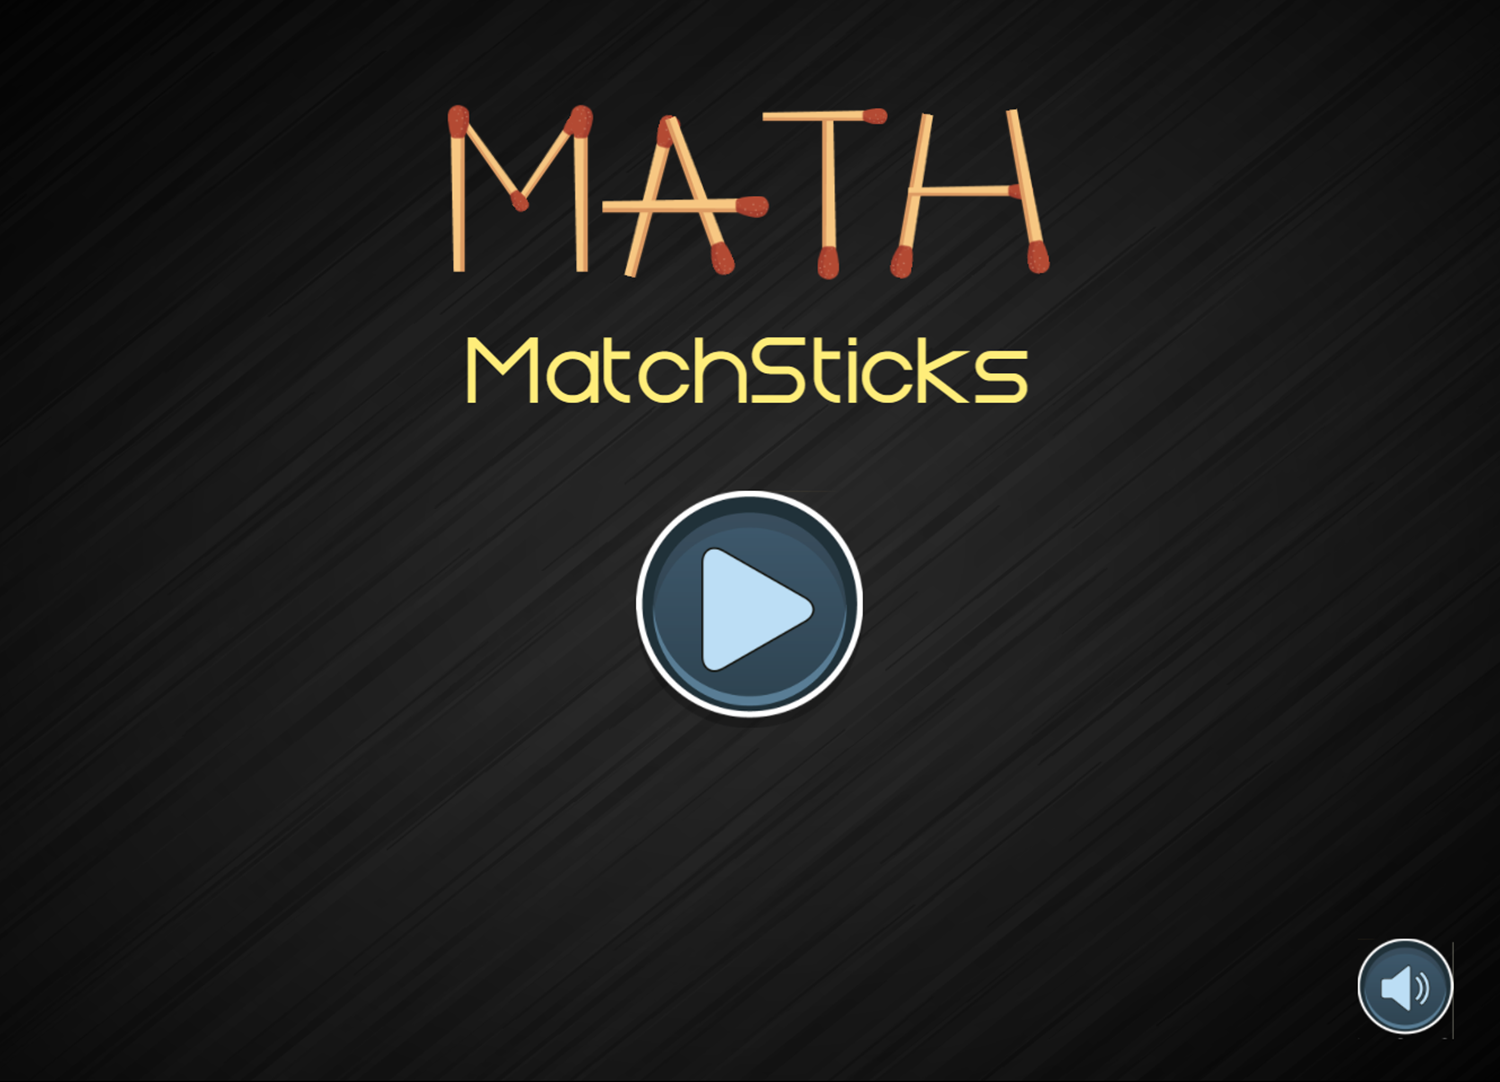 Math Matchsticks Game Welcome Screen Screenshot.